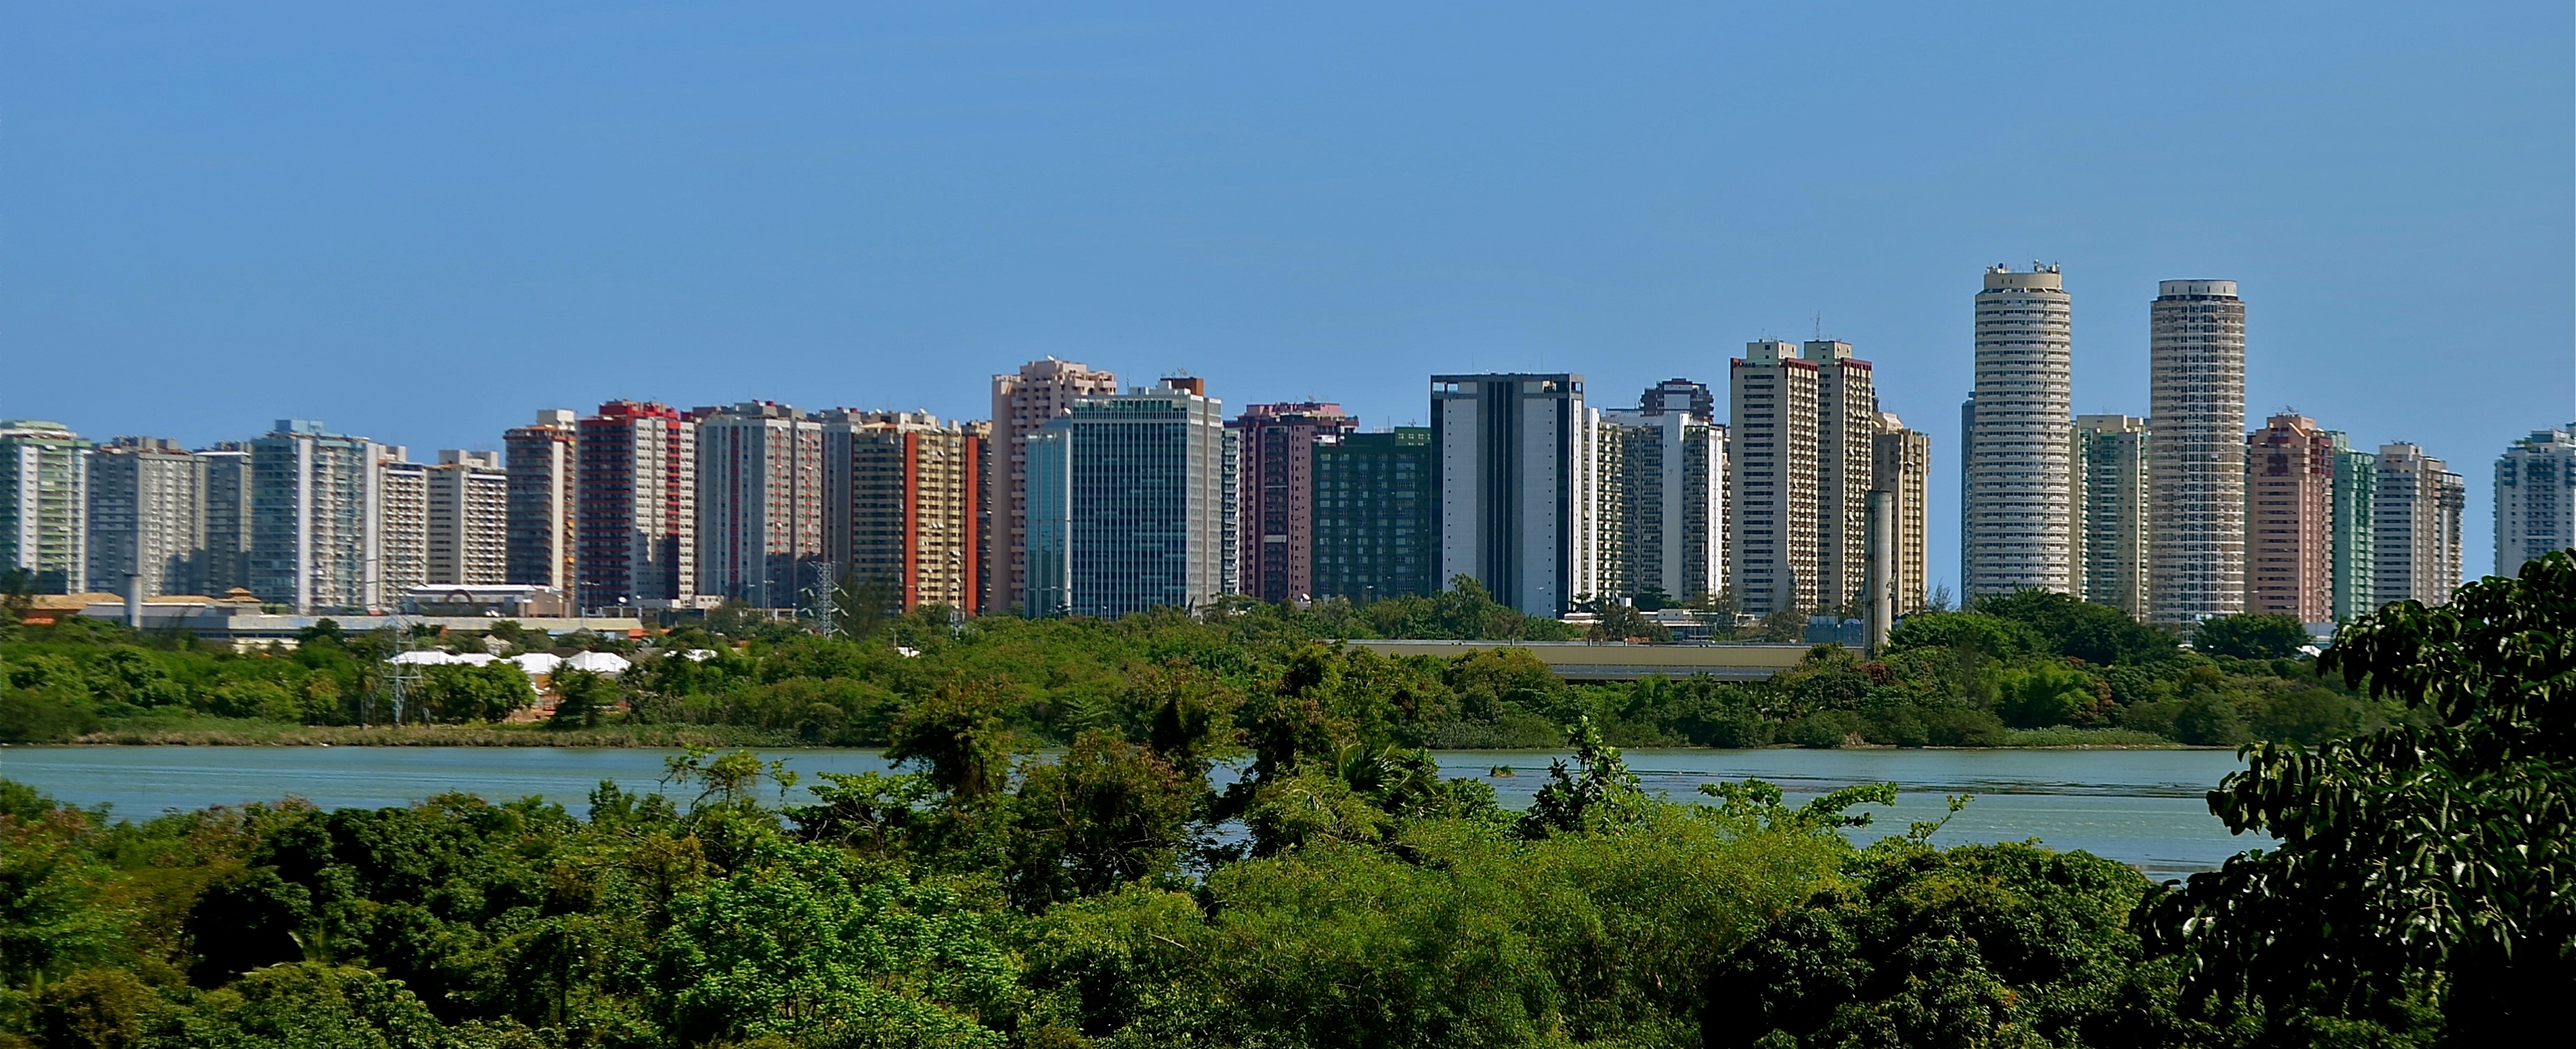 Barra_da_Tijuca - RJ - Foto Wikimedia.jpg